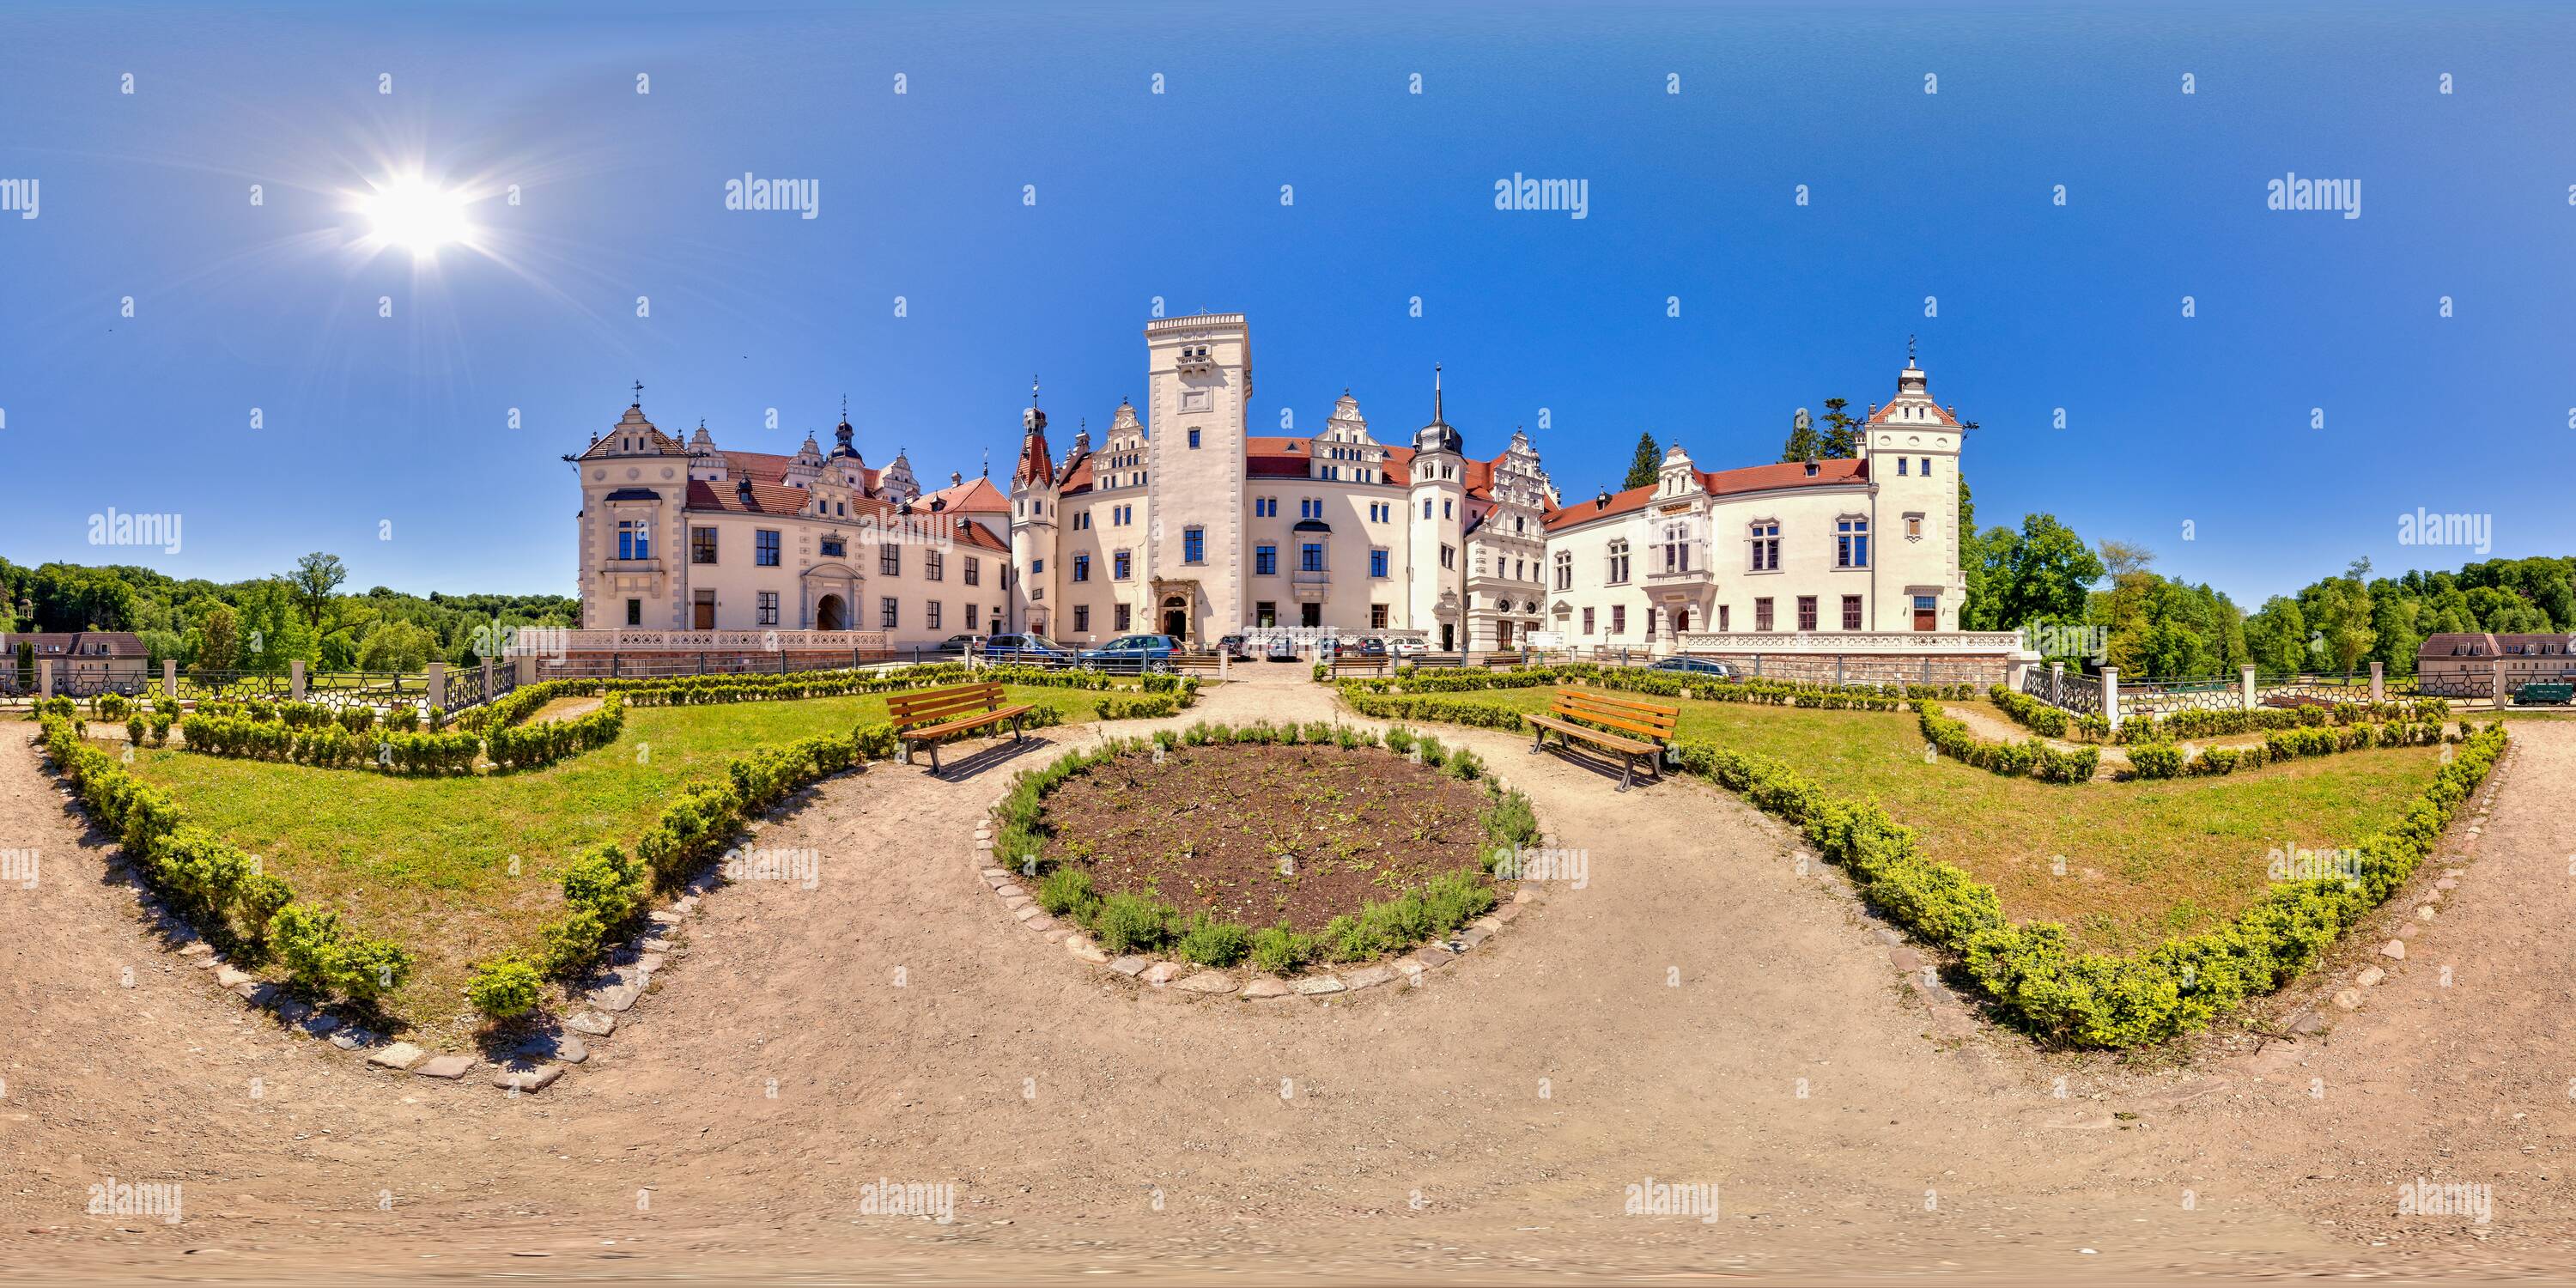 360 degree panoramic view of Schloss Boitzenburg 1